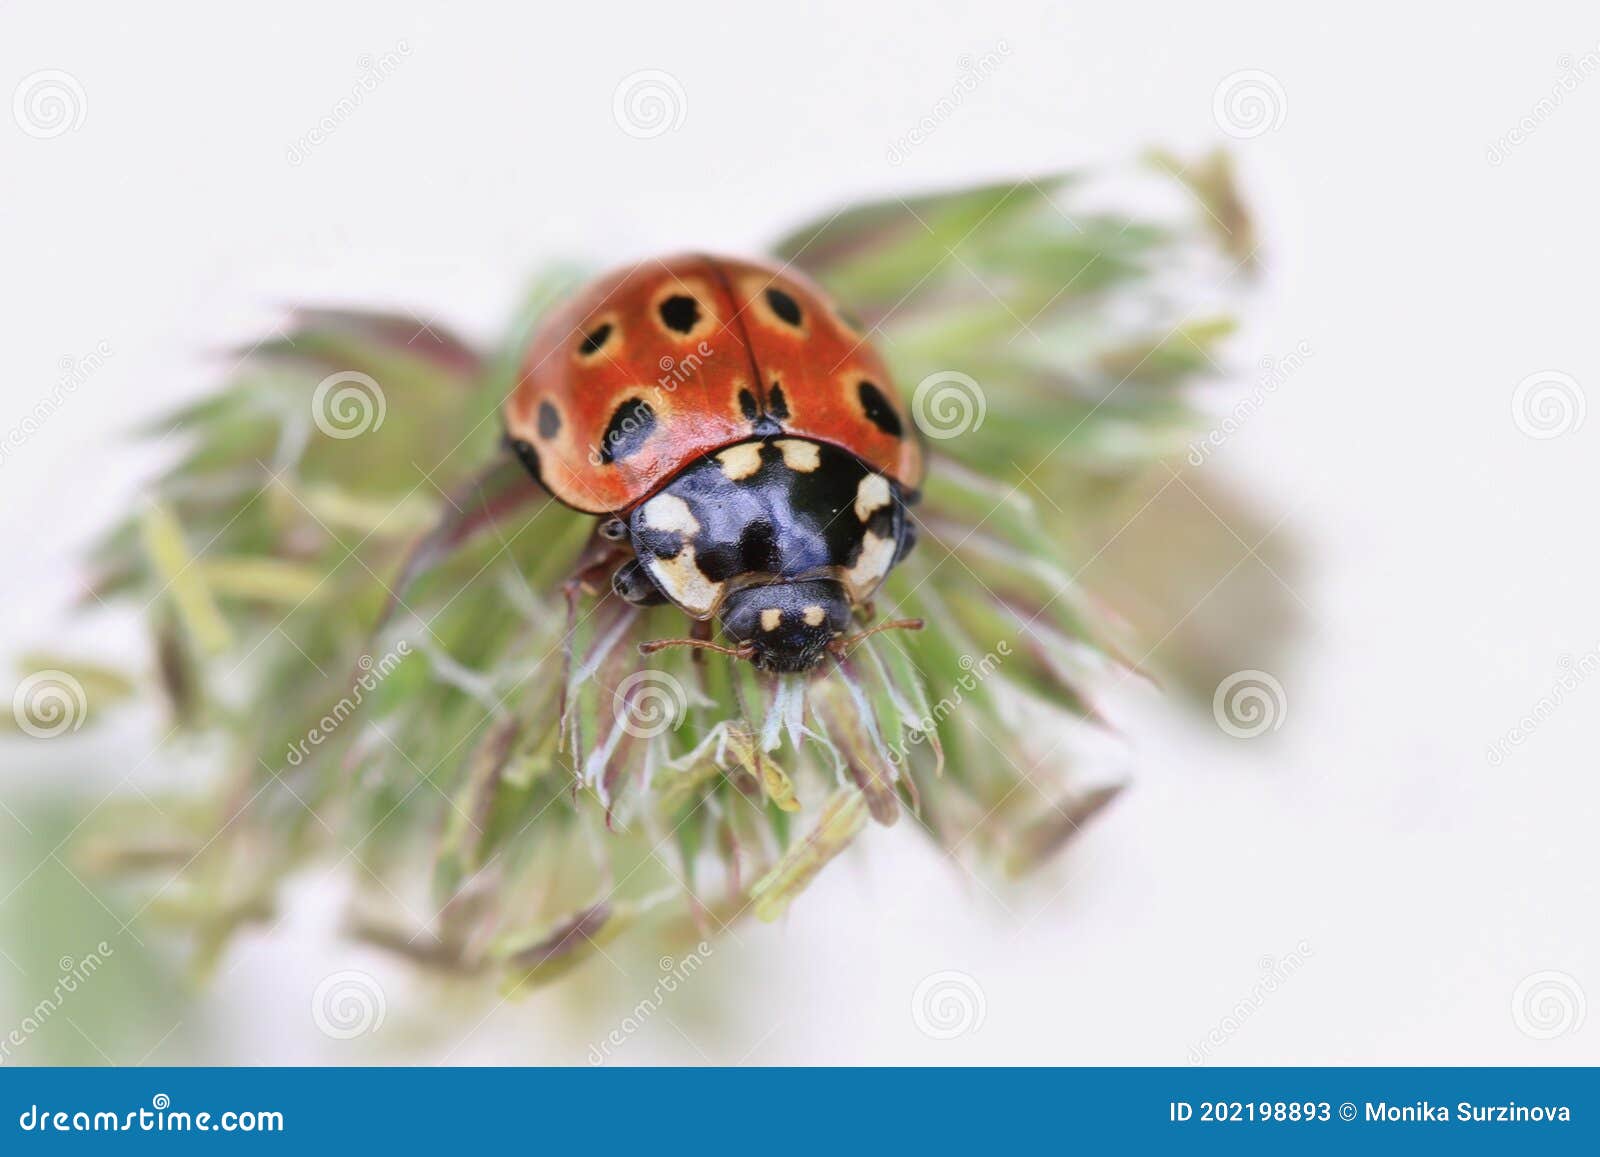 ladybug sitting on the plant. eyed ladybug. anatis ocellata.